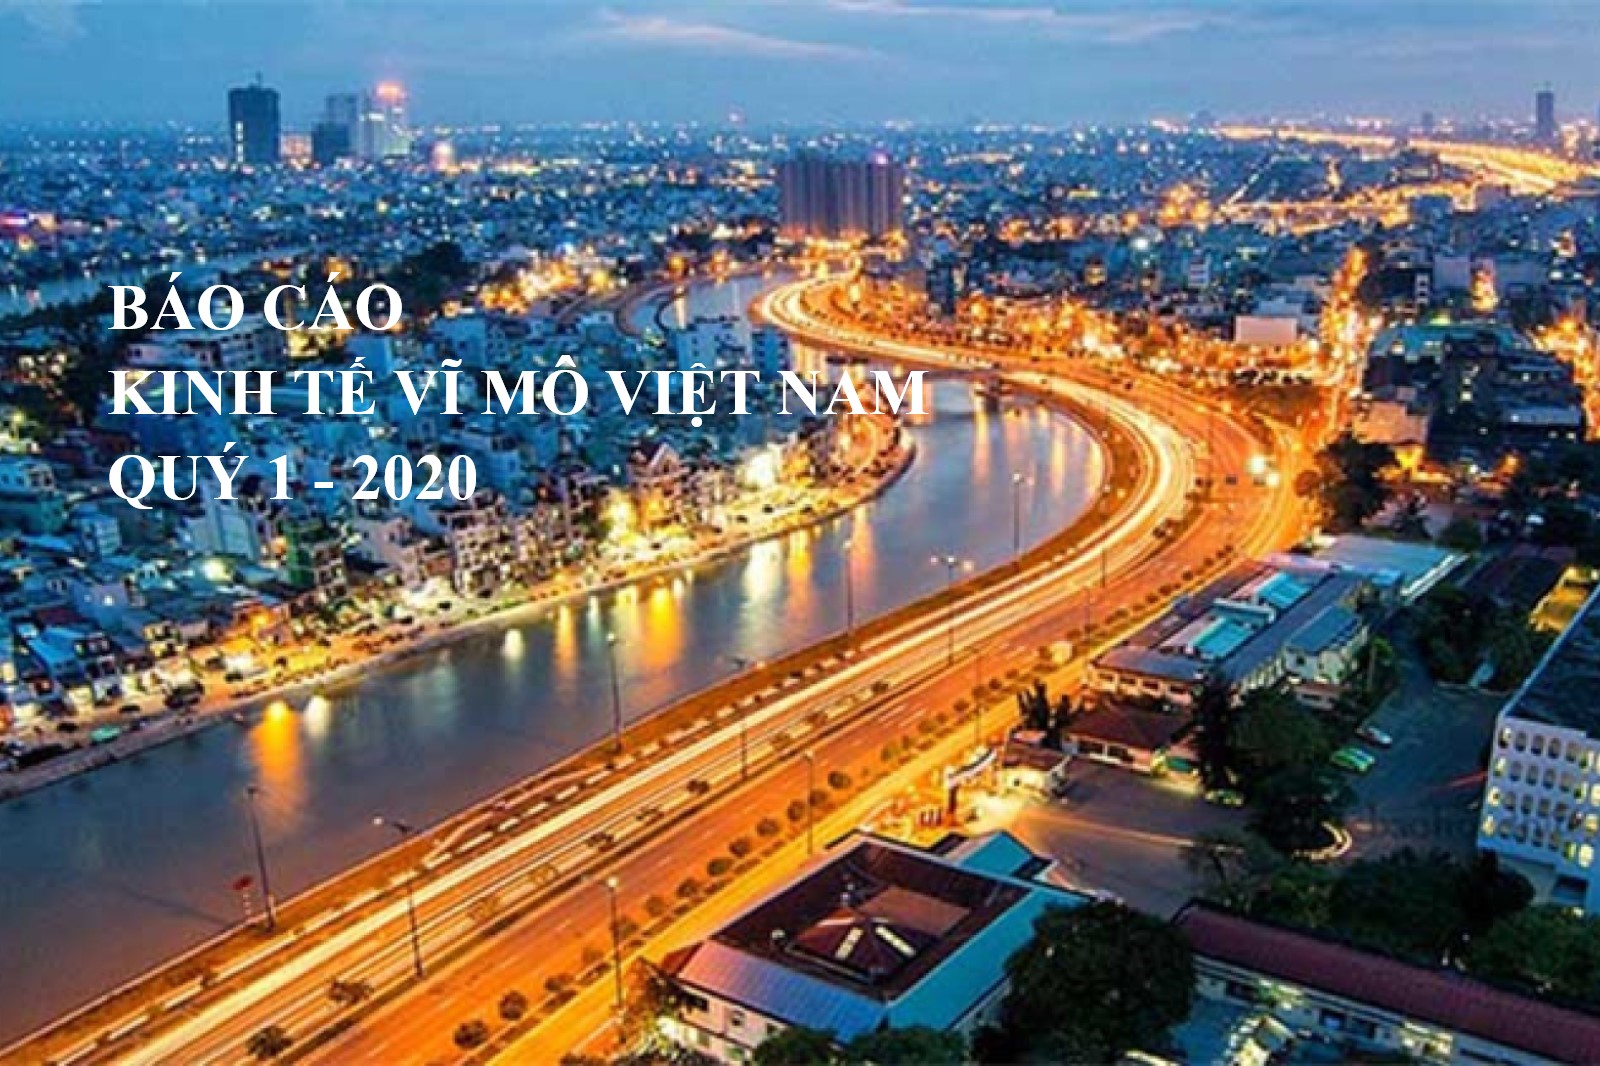 Báo cáo kinh tế vĩ mô Việt Nam Quý 1 - 2020: Nền kinh tế thế giới và Việt Nam tiếp tục đà tăng trưởng thấp 